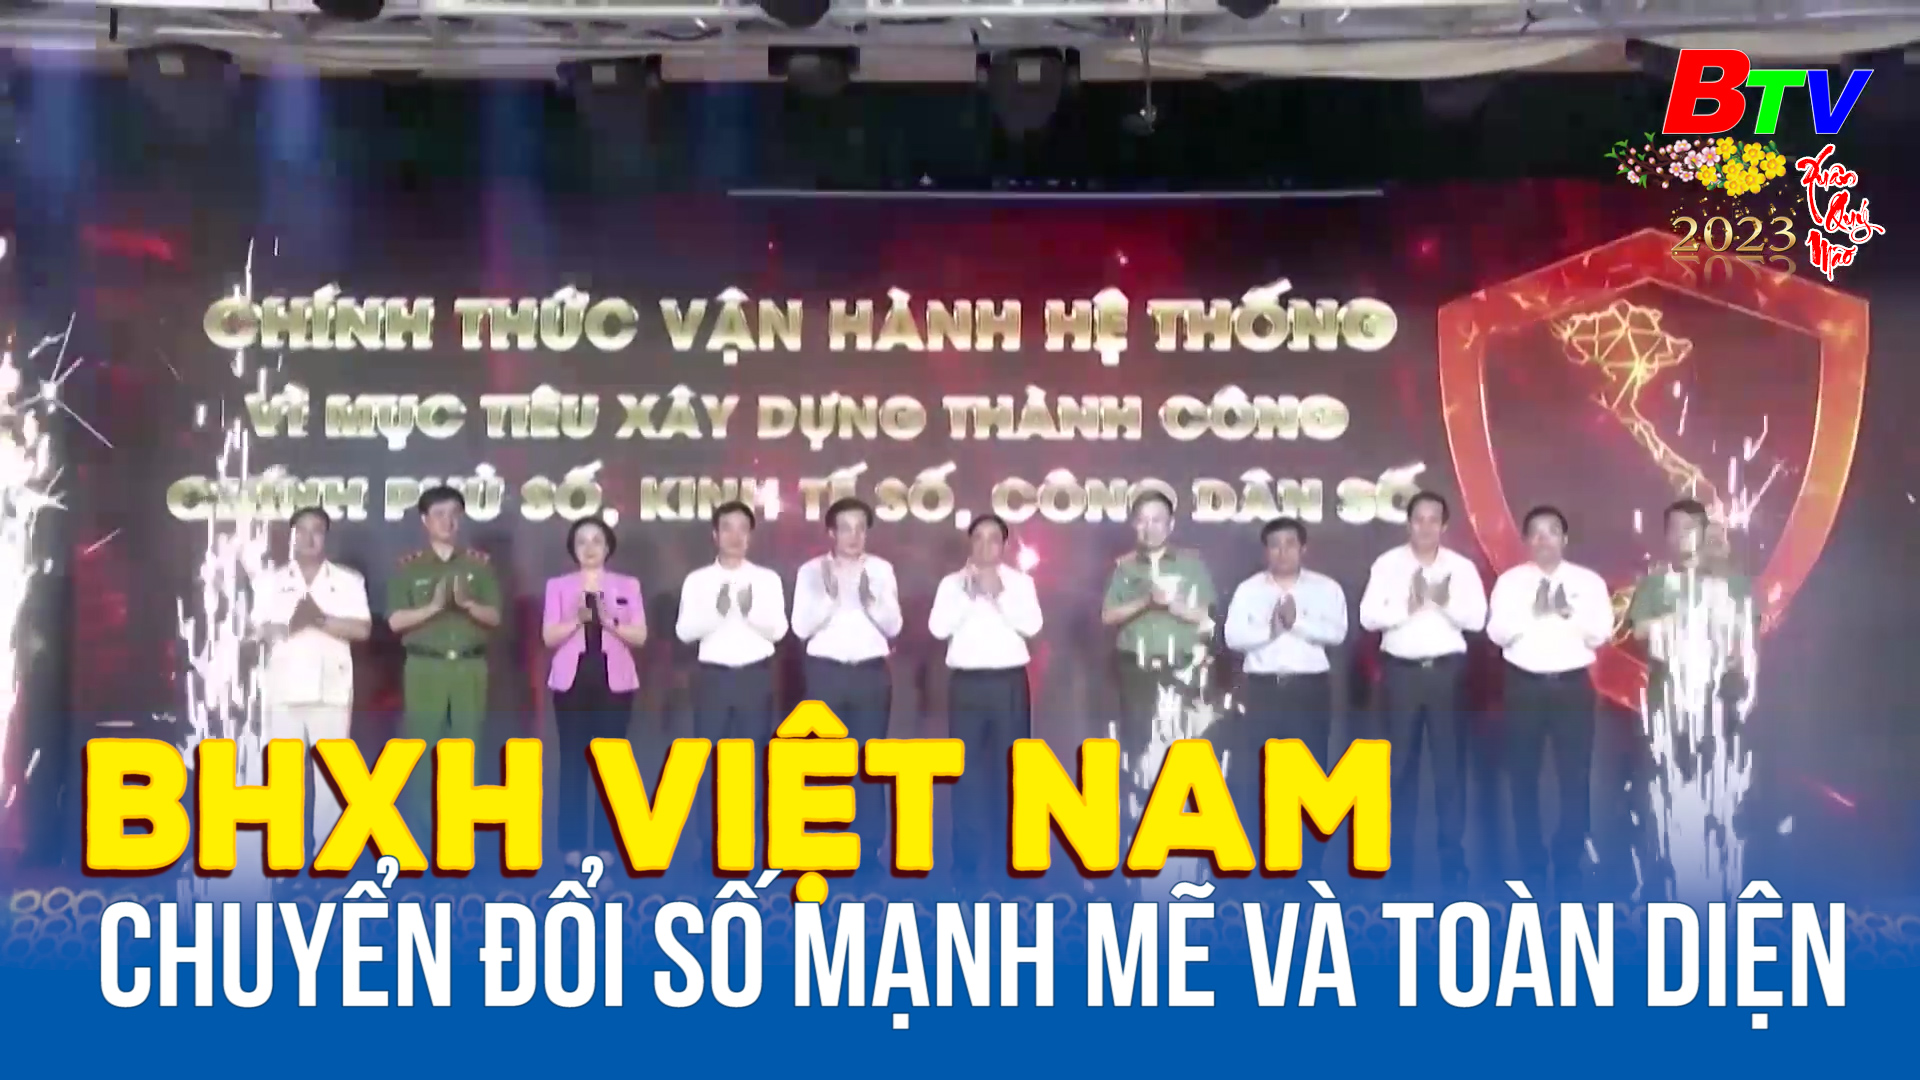 BHXH Việt Nam chuyển đổi số mạnh mẽ và toàn diện